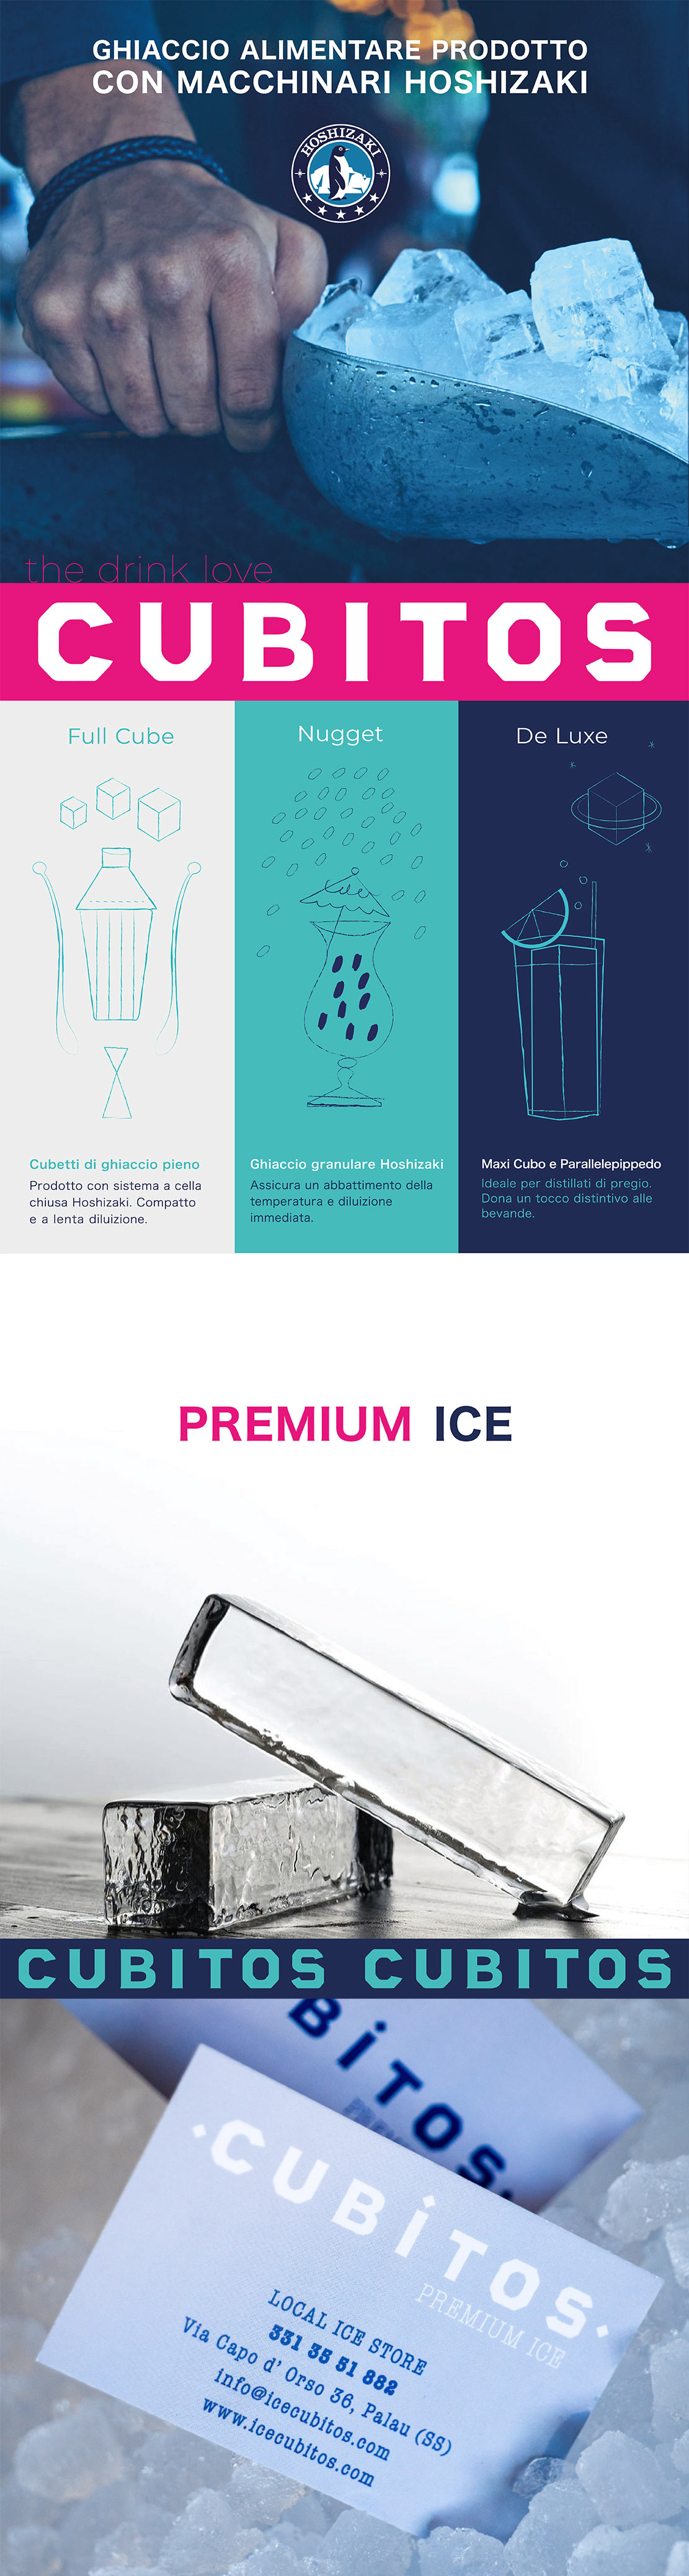 Cubitos Premium ice - Produzione e vendita di ghiaccio alimentare certificato prodotto con macchinari Hoshizaki a Palau Costa Smeralda in nord Sardegna.